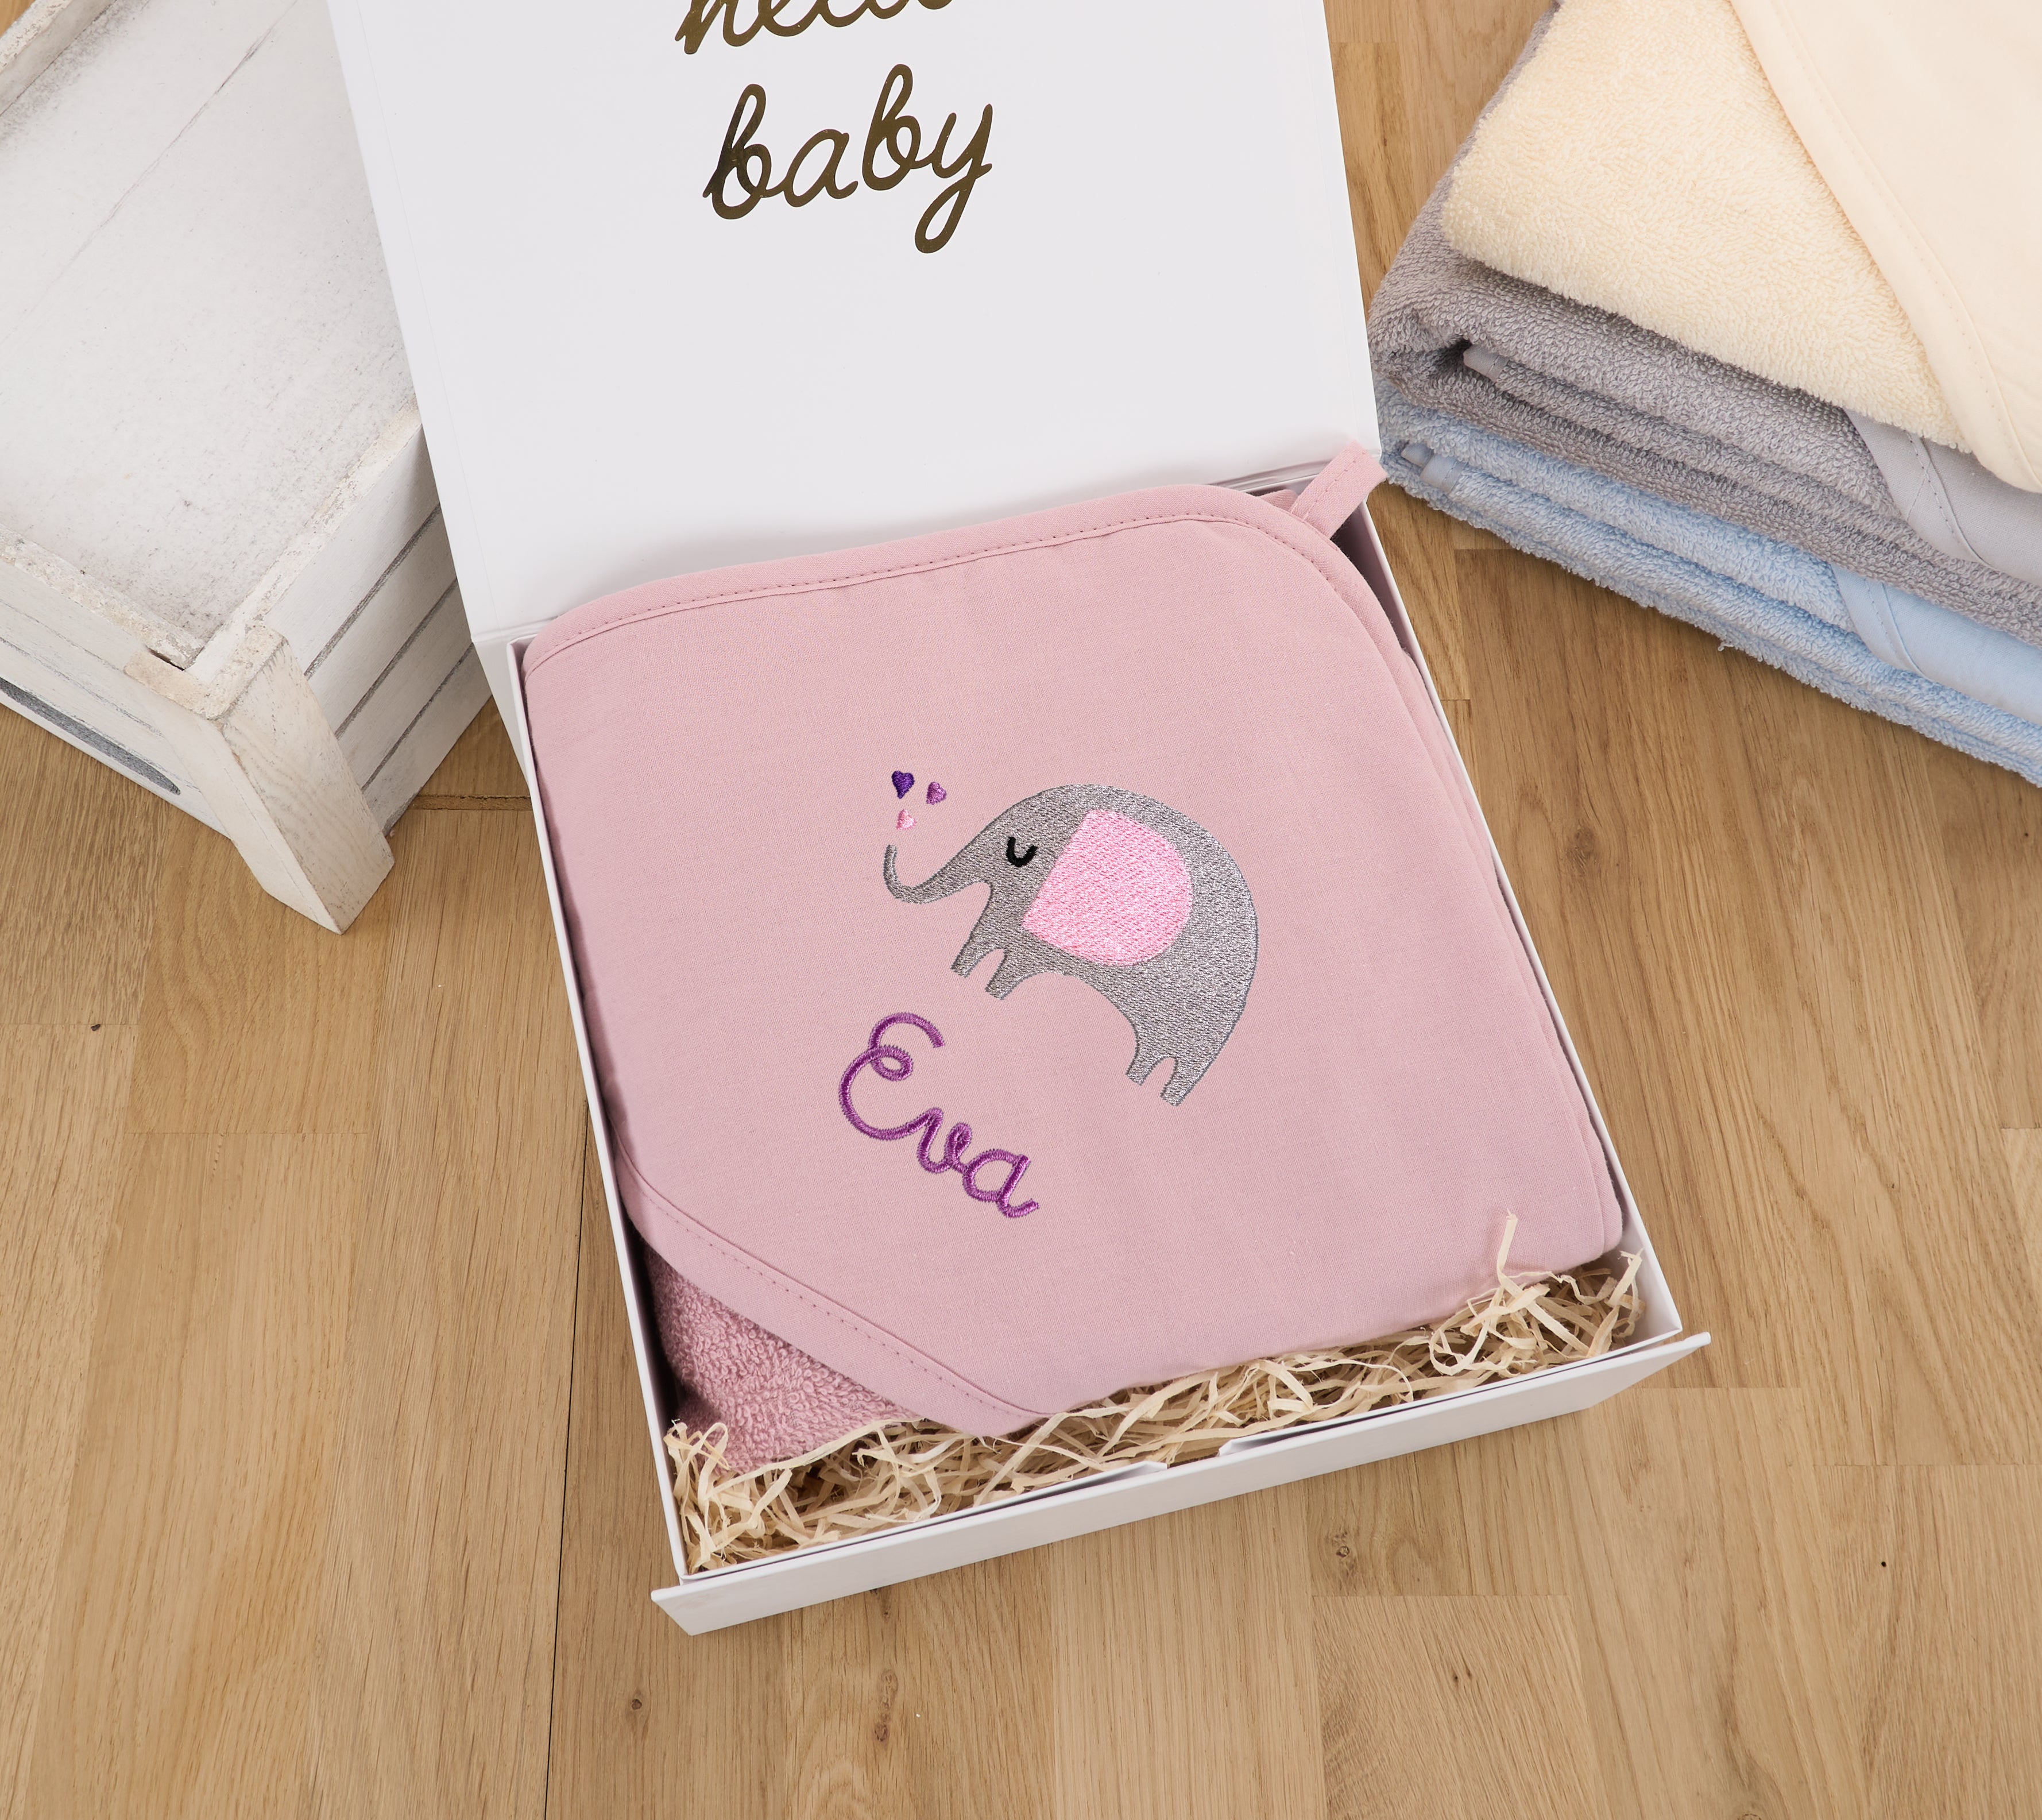 Kinder / Baby Handtuch mit Namen personalisiert